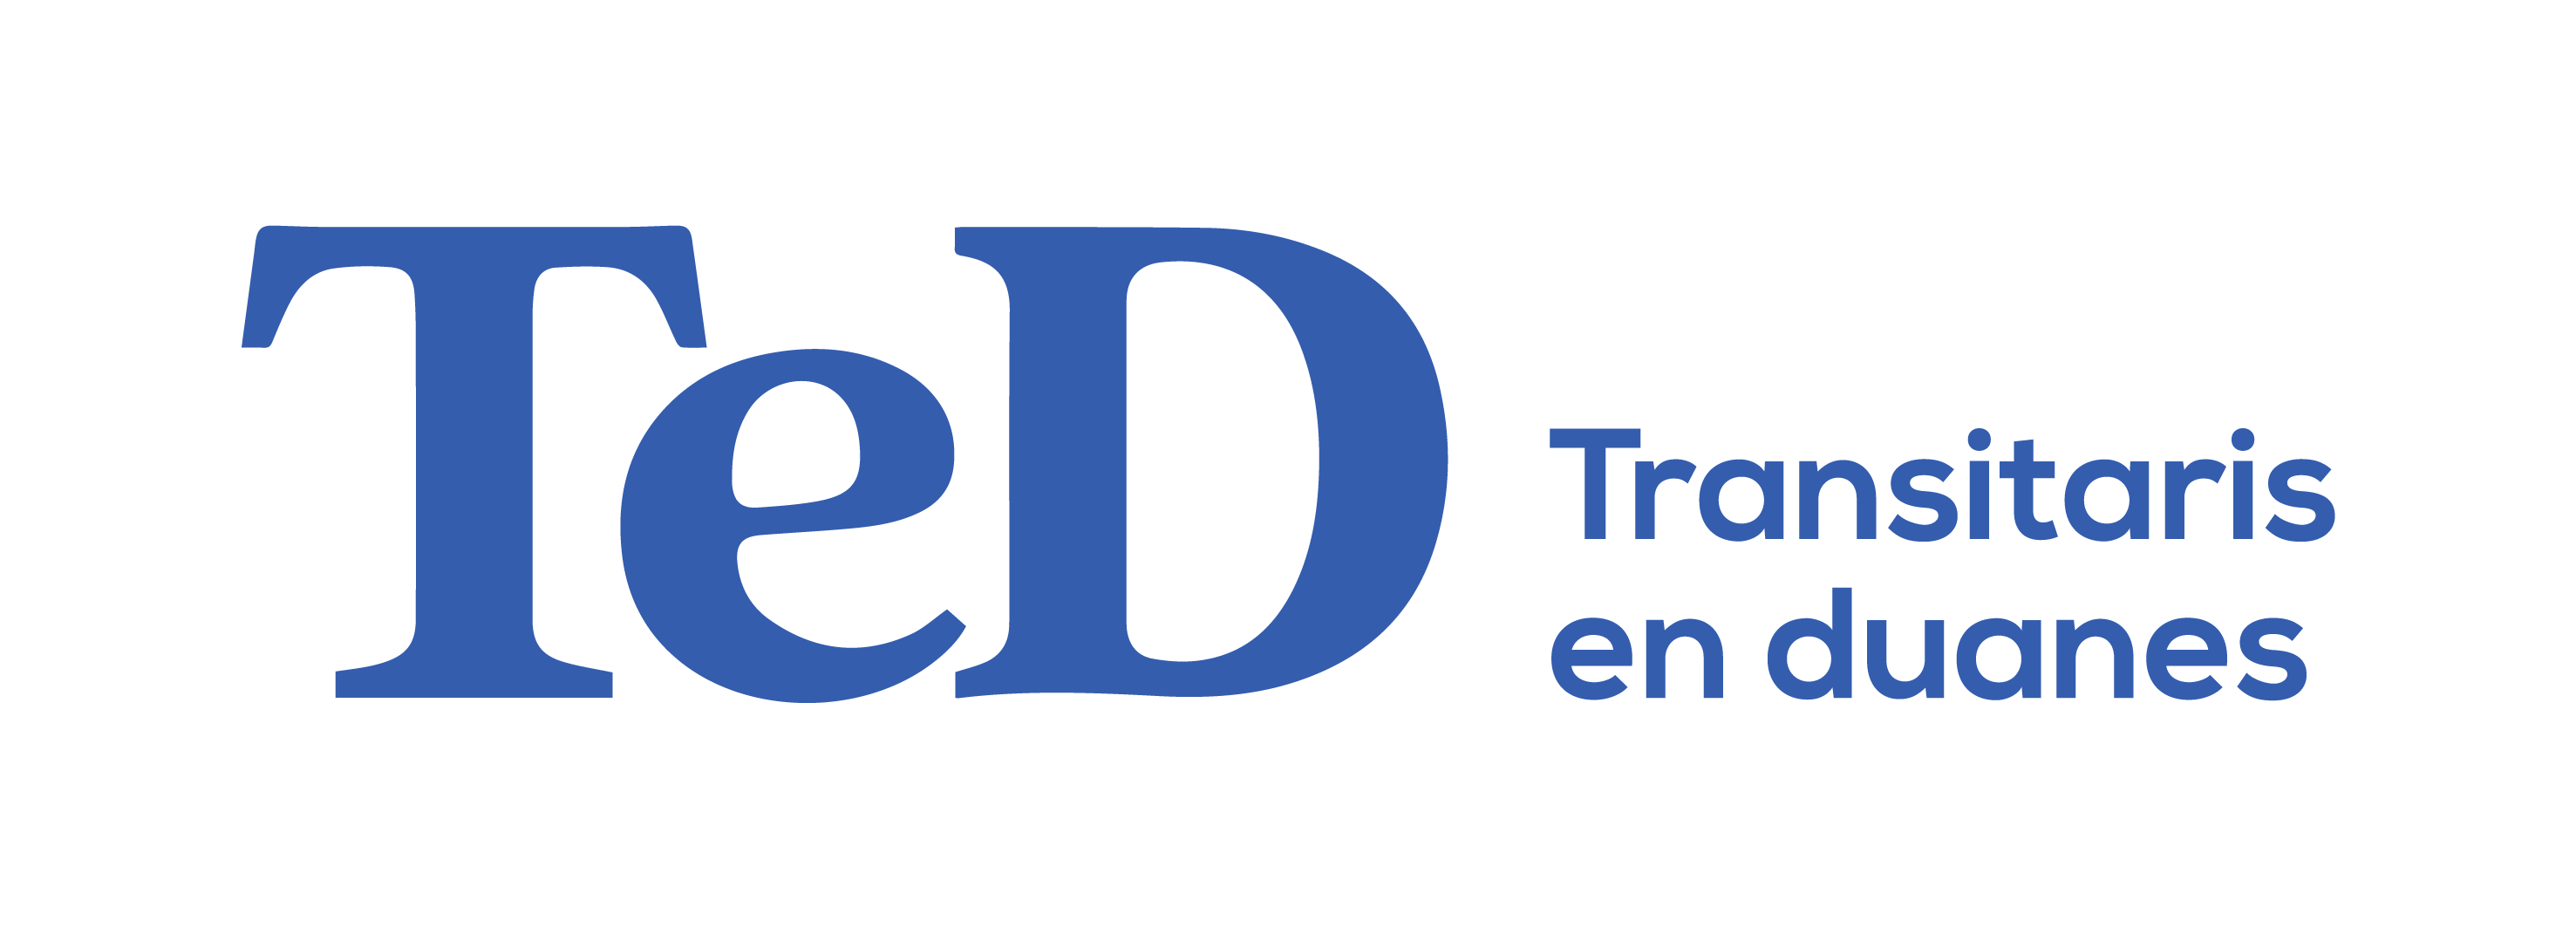 Logo Ted Transitaris en duanes